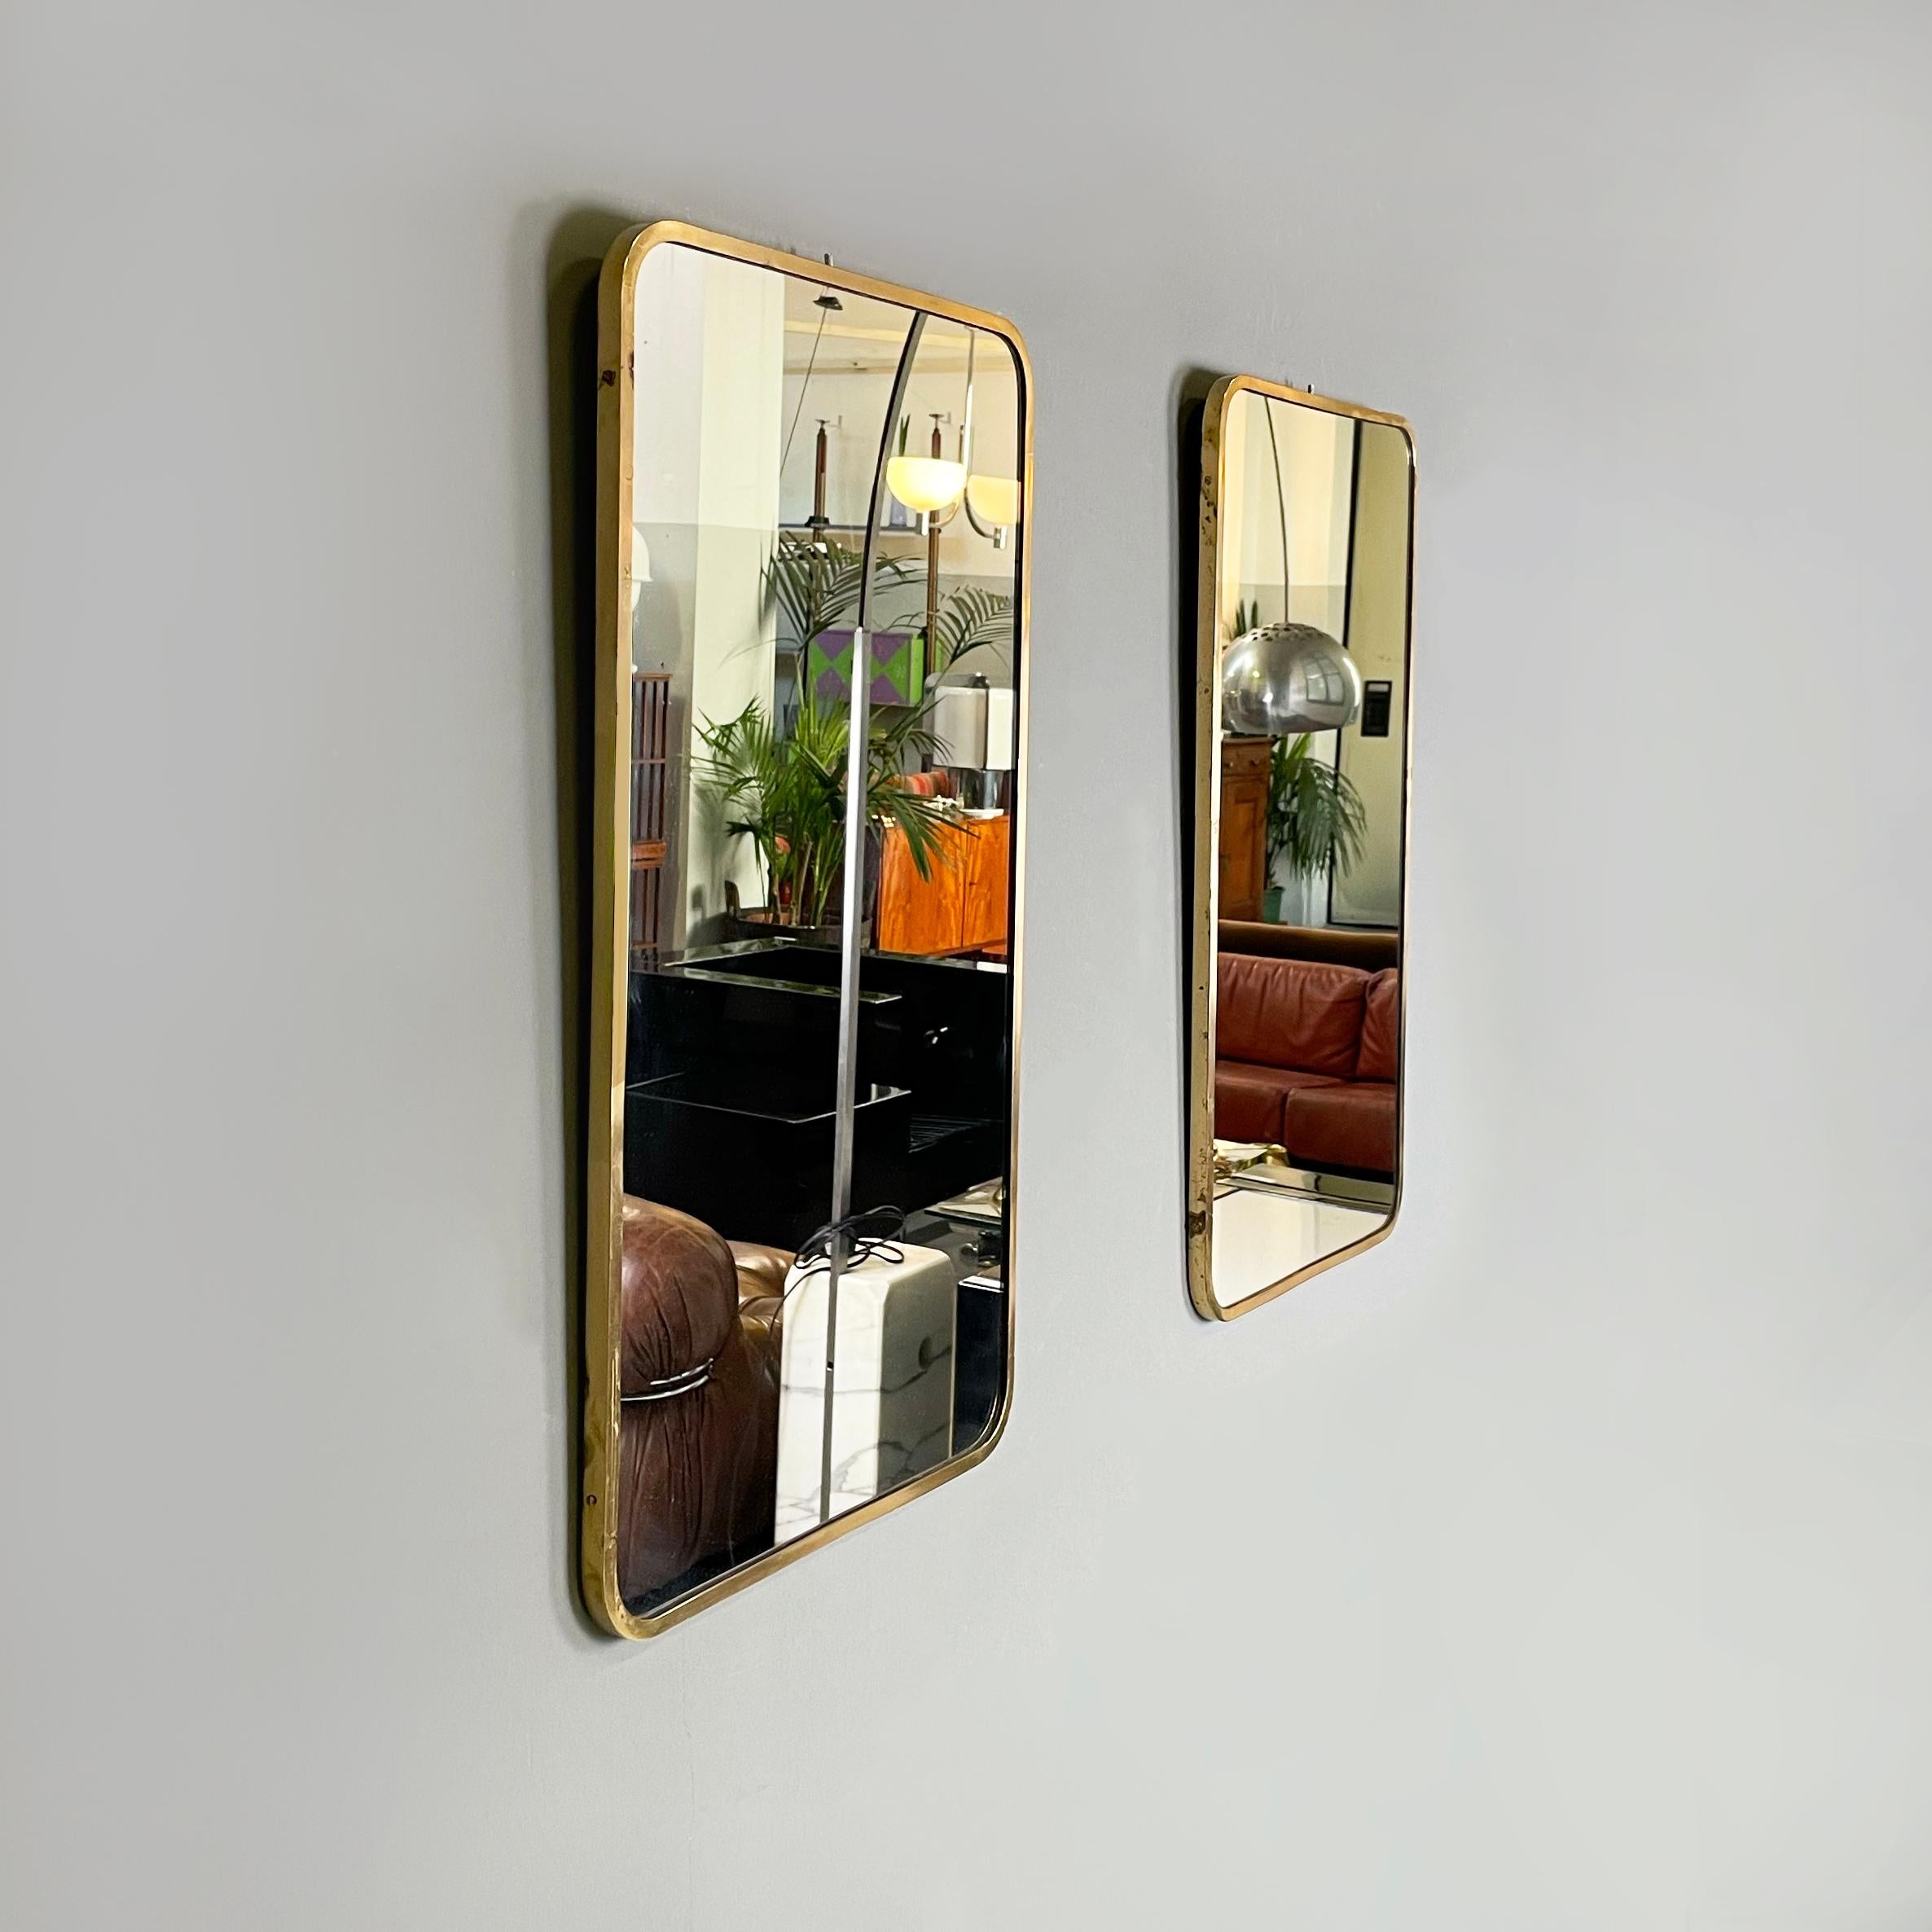 Mid-Century Modern Italian mid-century modern Wall mirrors in brass frame, 1950s